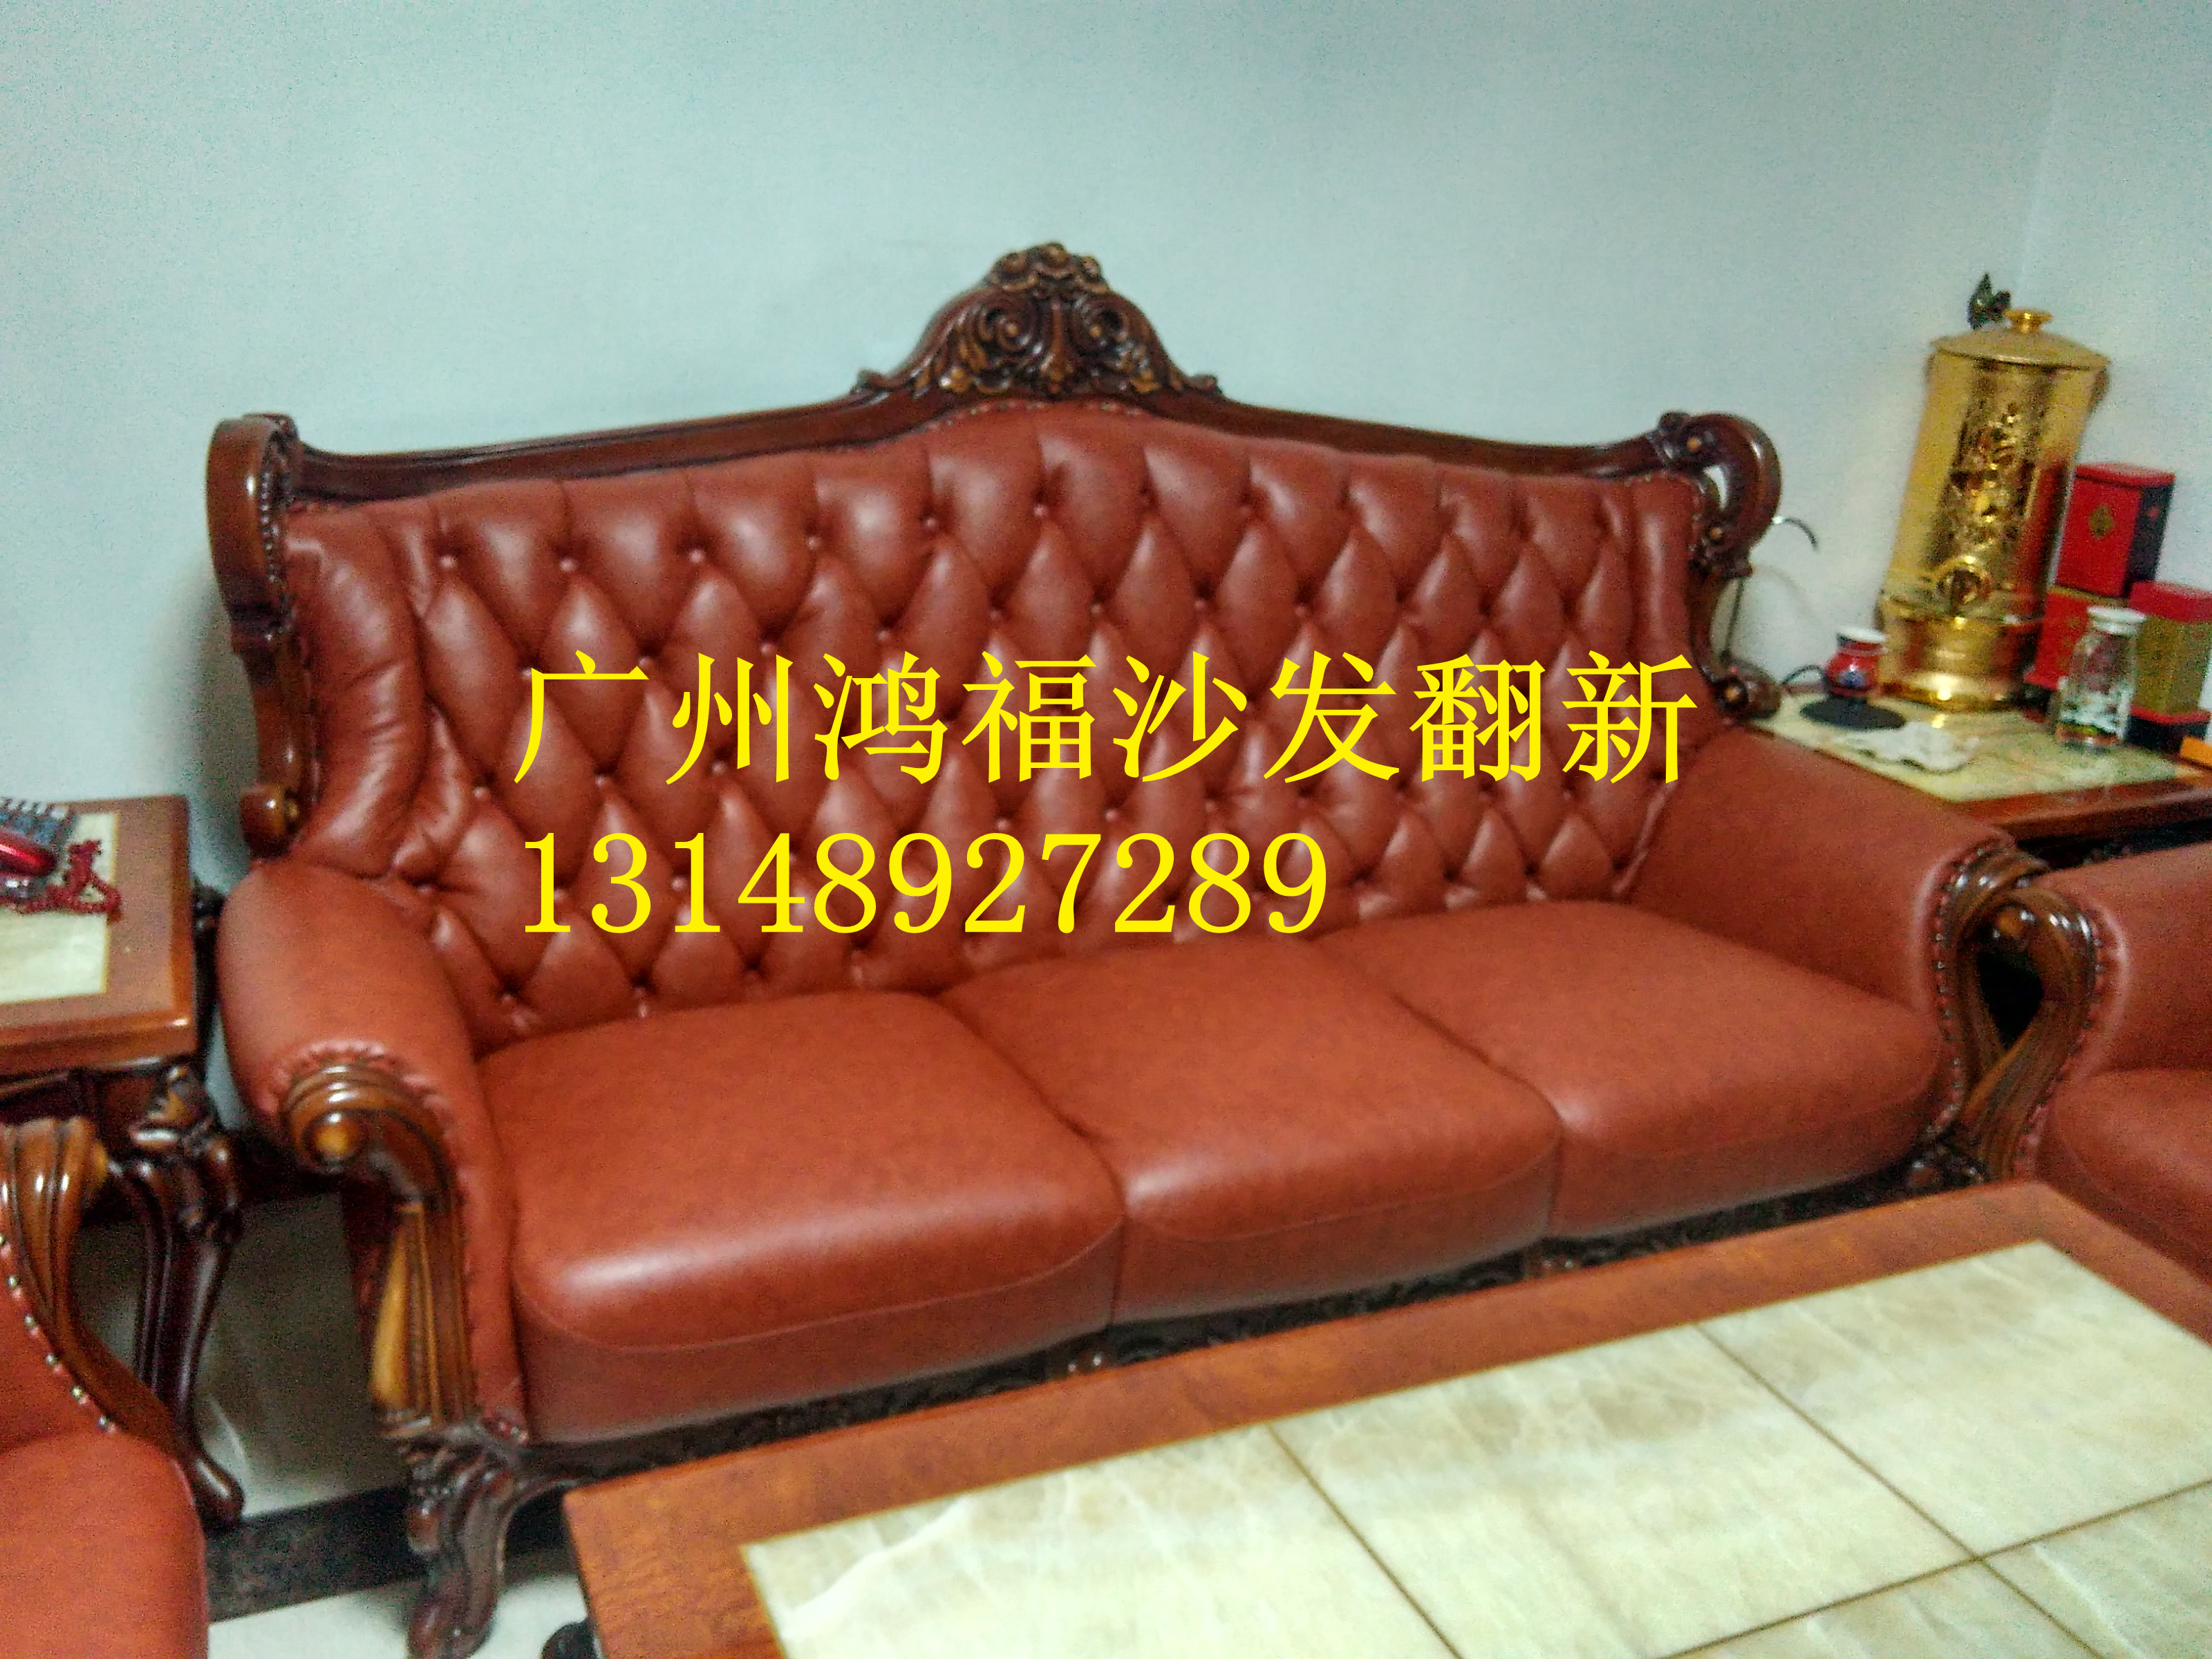 供应广州番禺区沙发维修换皮，广州沙发翻新厂家，广州沙发翻新价格